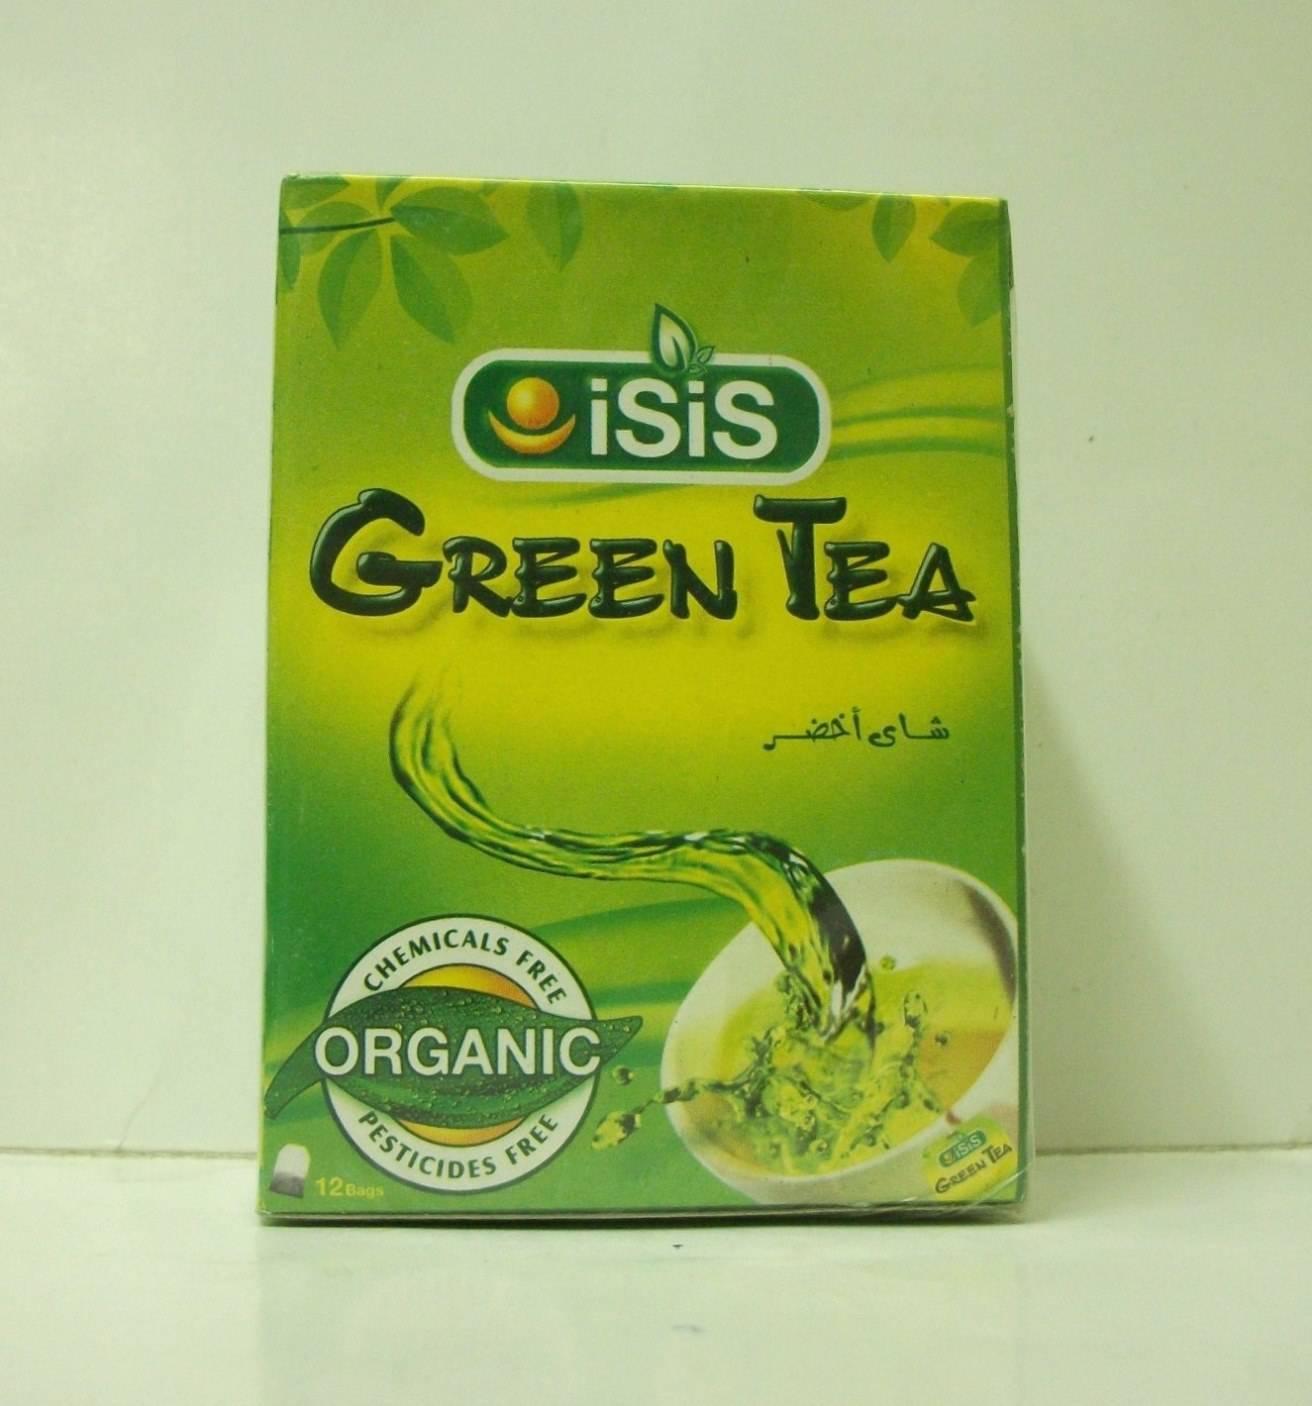 Isis Green tea - Tea bag